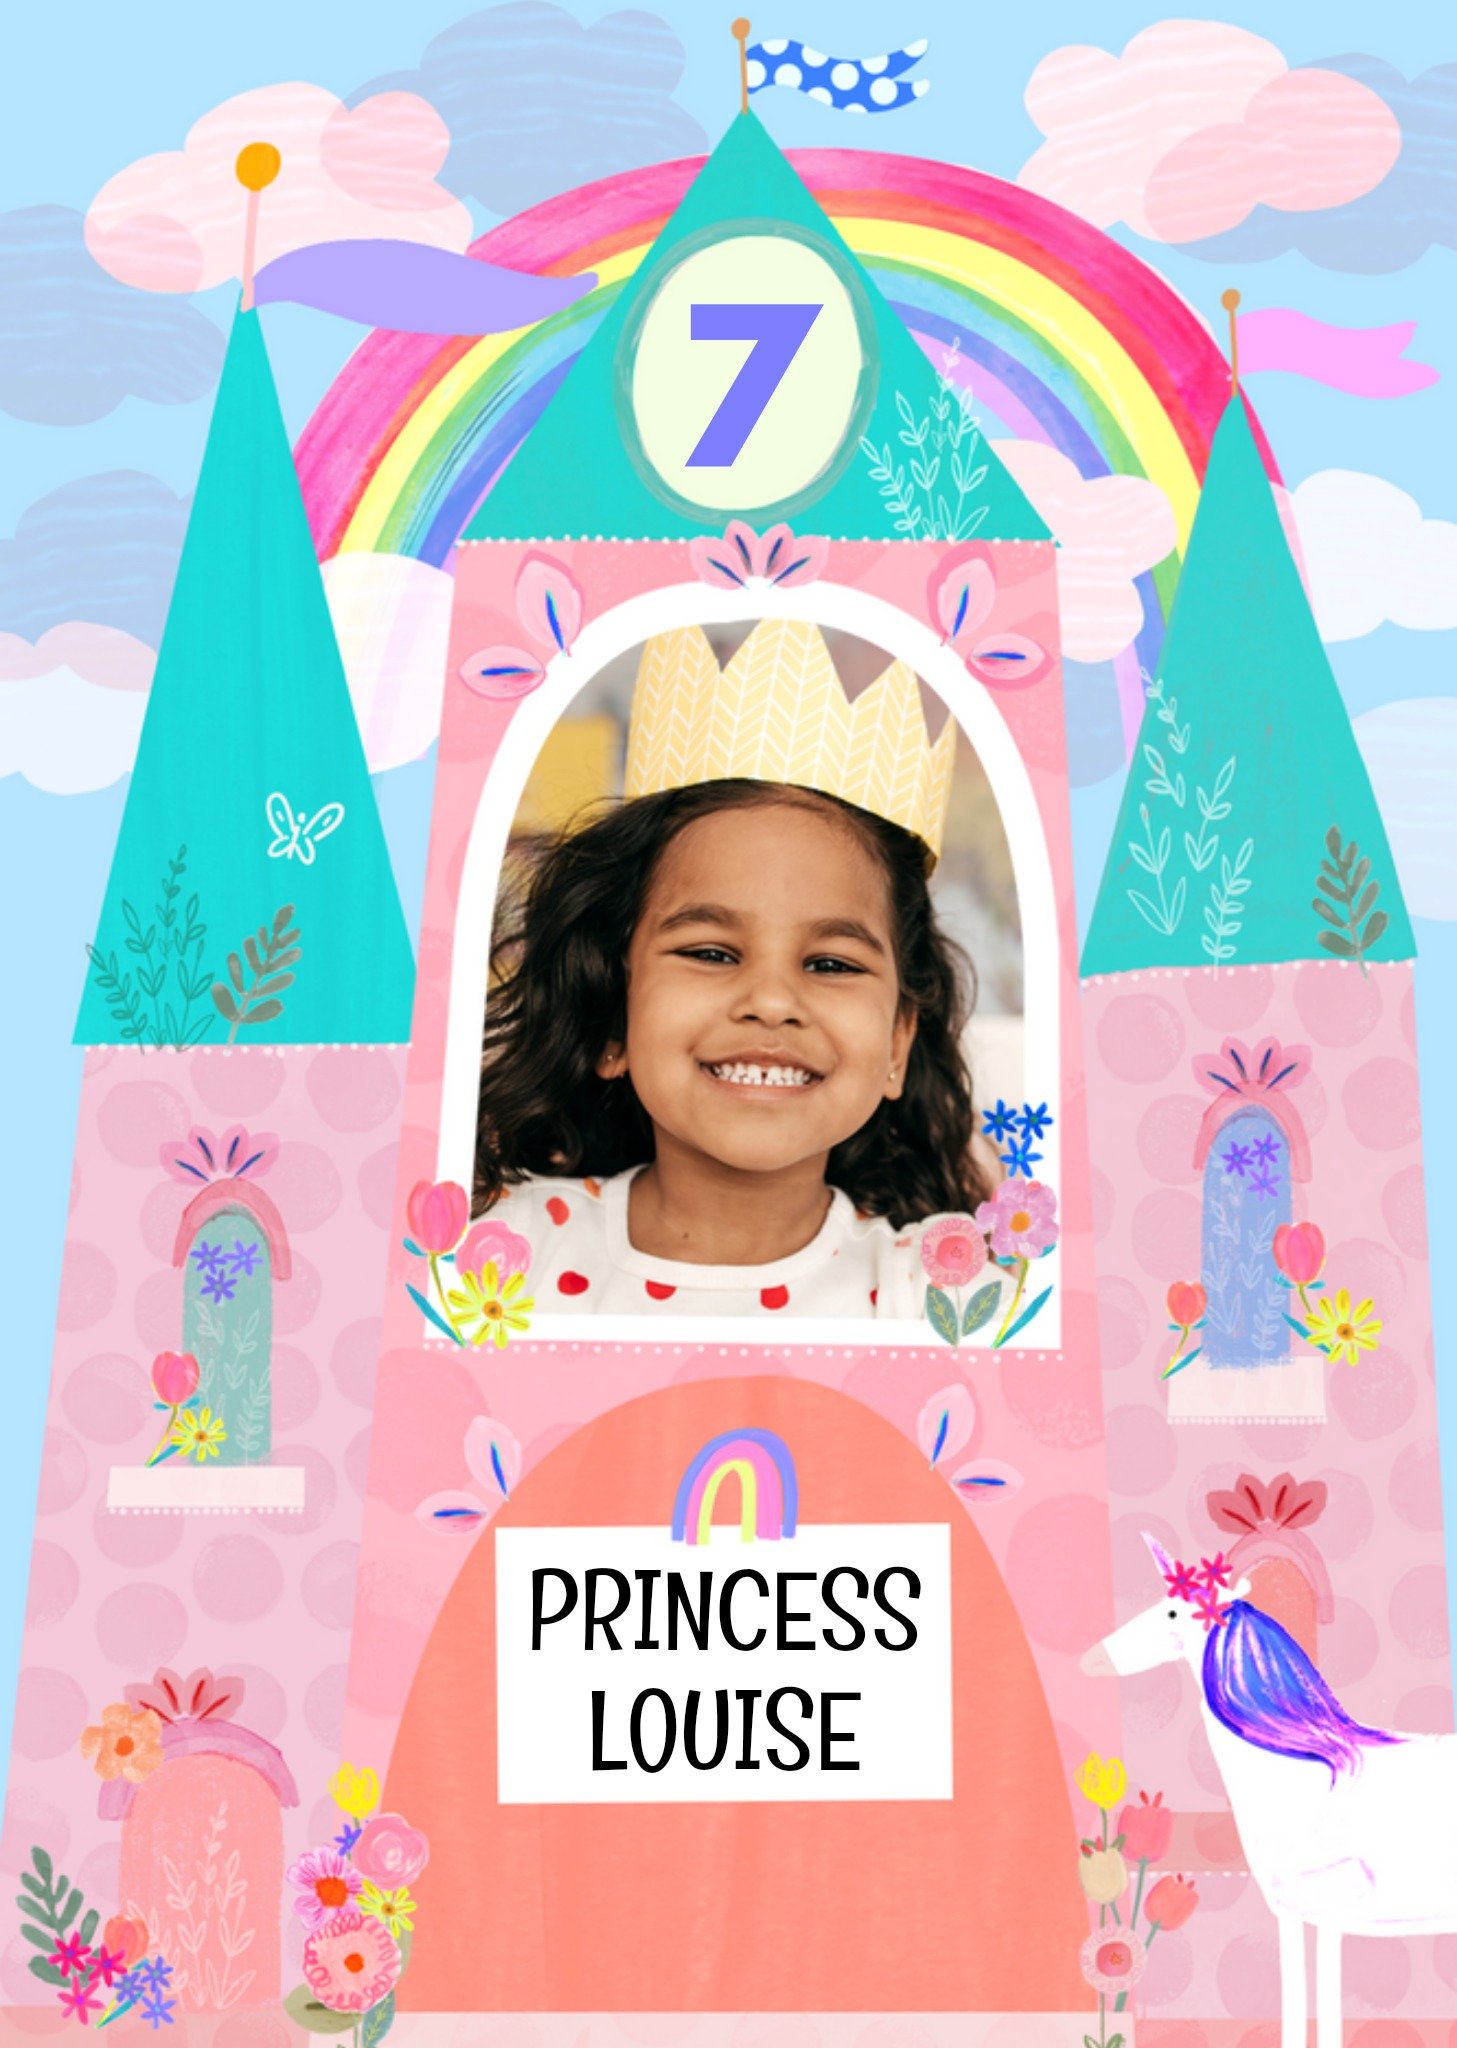 Moonpig Sweet Katt Jones Illustrated Princess Castle And Unicorn Photo Upload Birthday Card, Large